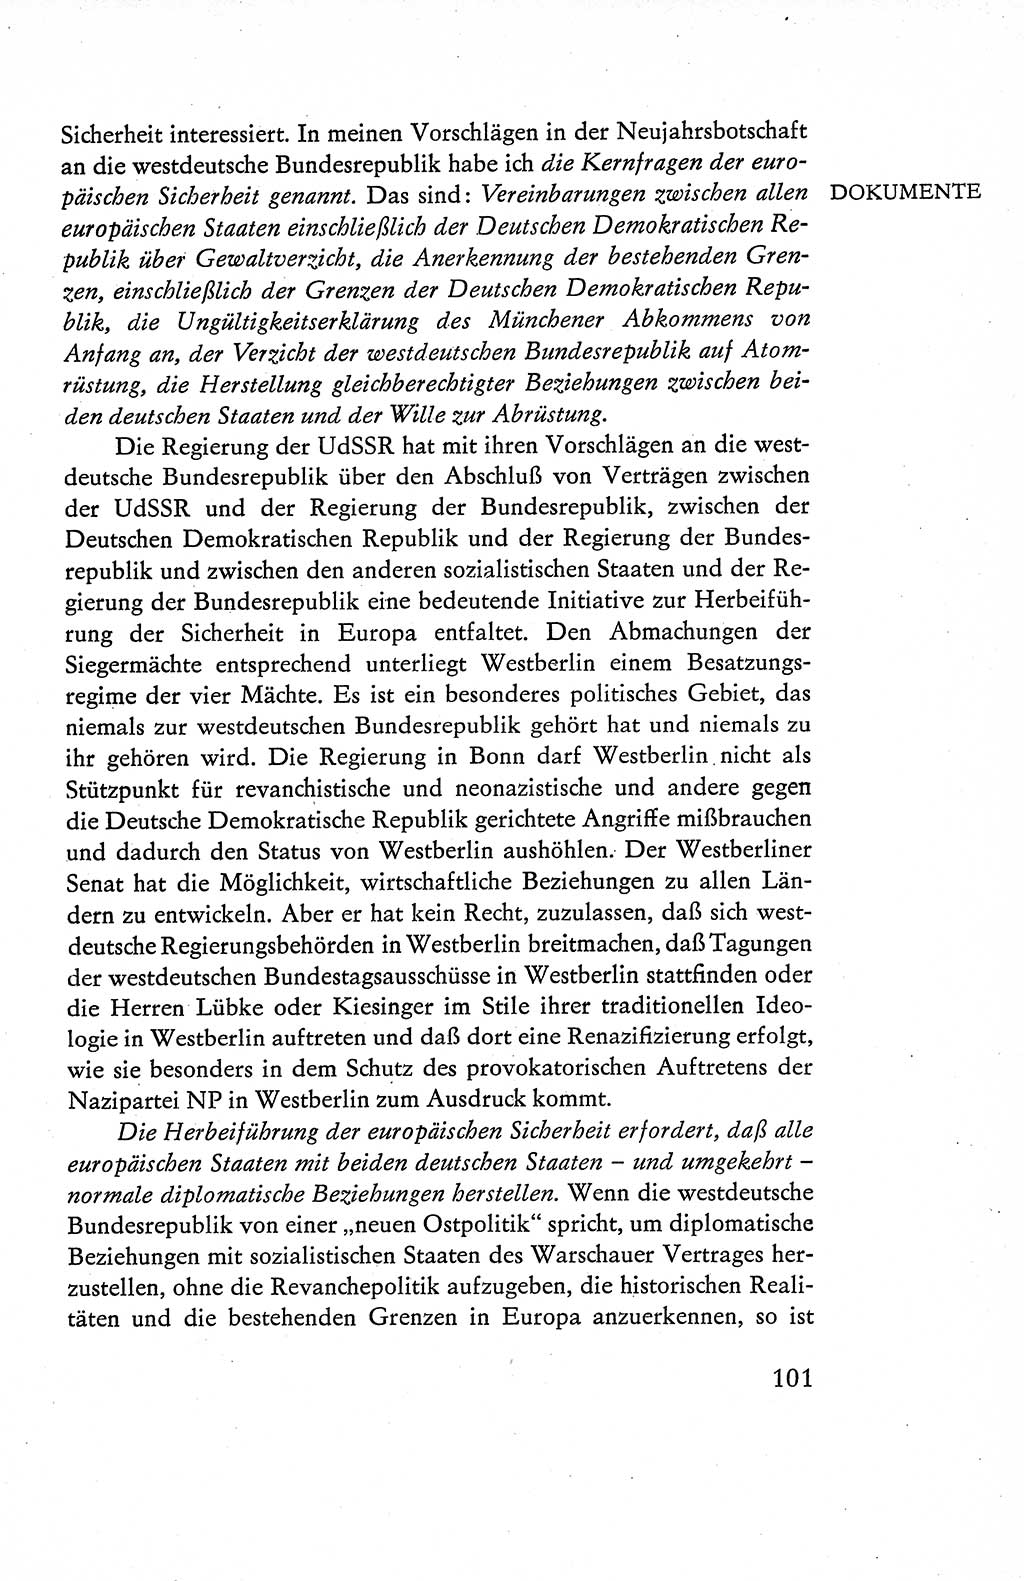 Verfassung der Deutschen Demokratischen Republik (DDR), Dokumente, Kommentar 1969, Band 1, Seite 101 (Verf. DDR Dok. Komm. 1969, Bd. 1, S. 101)